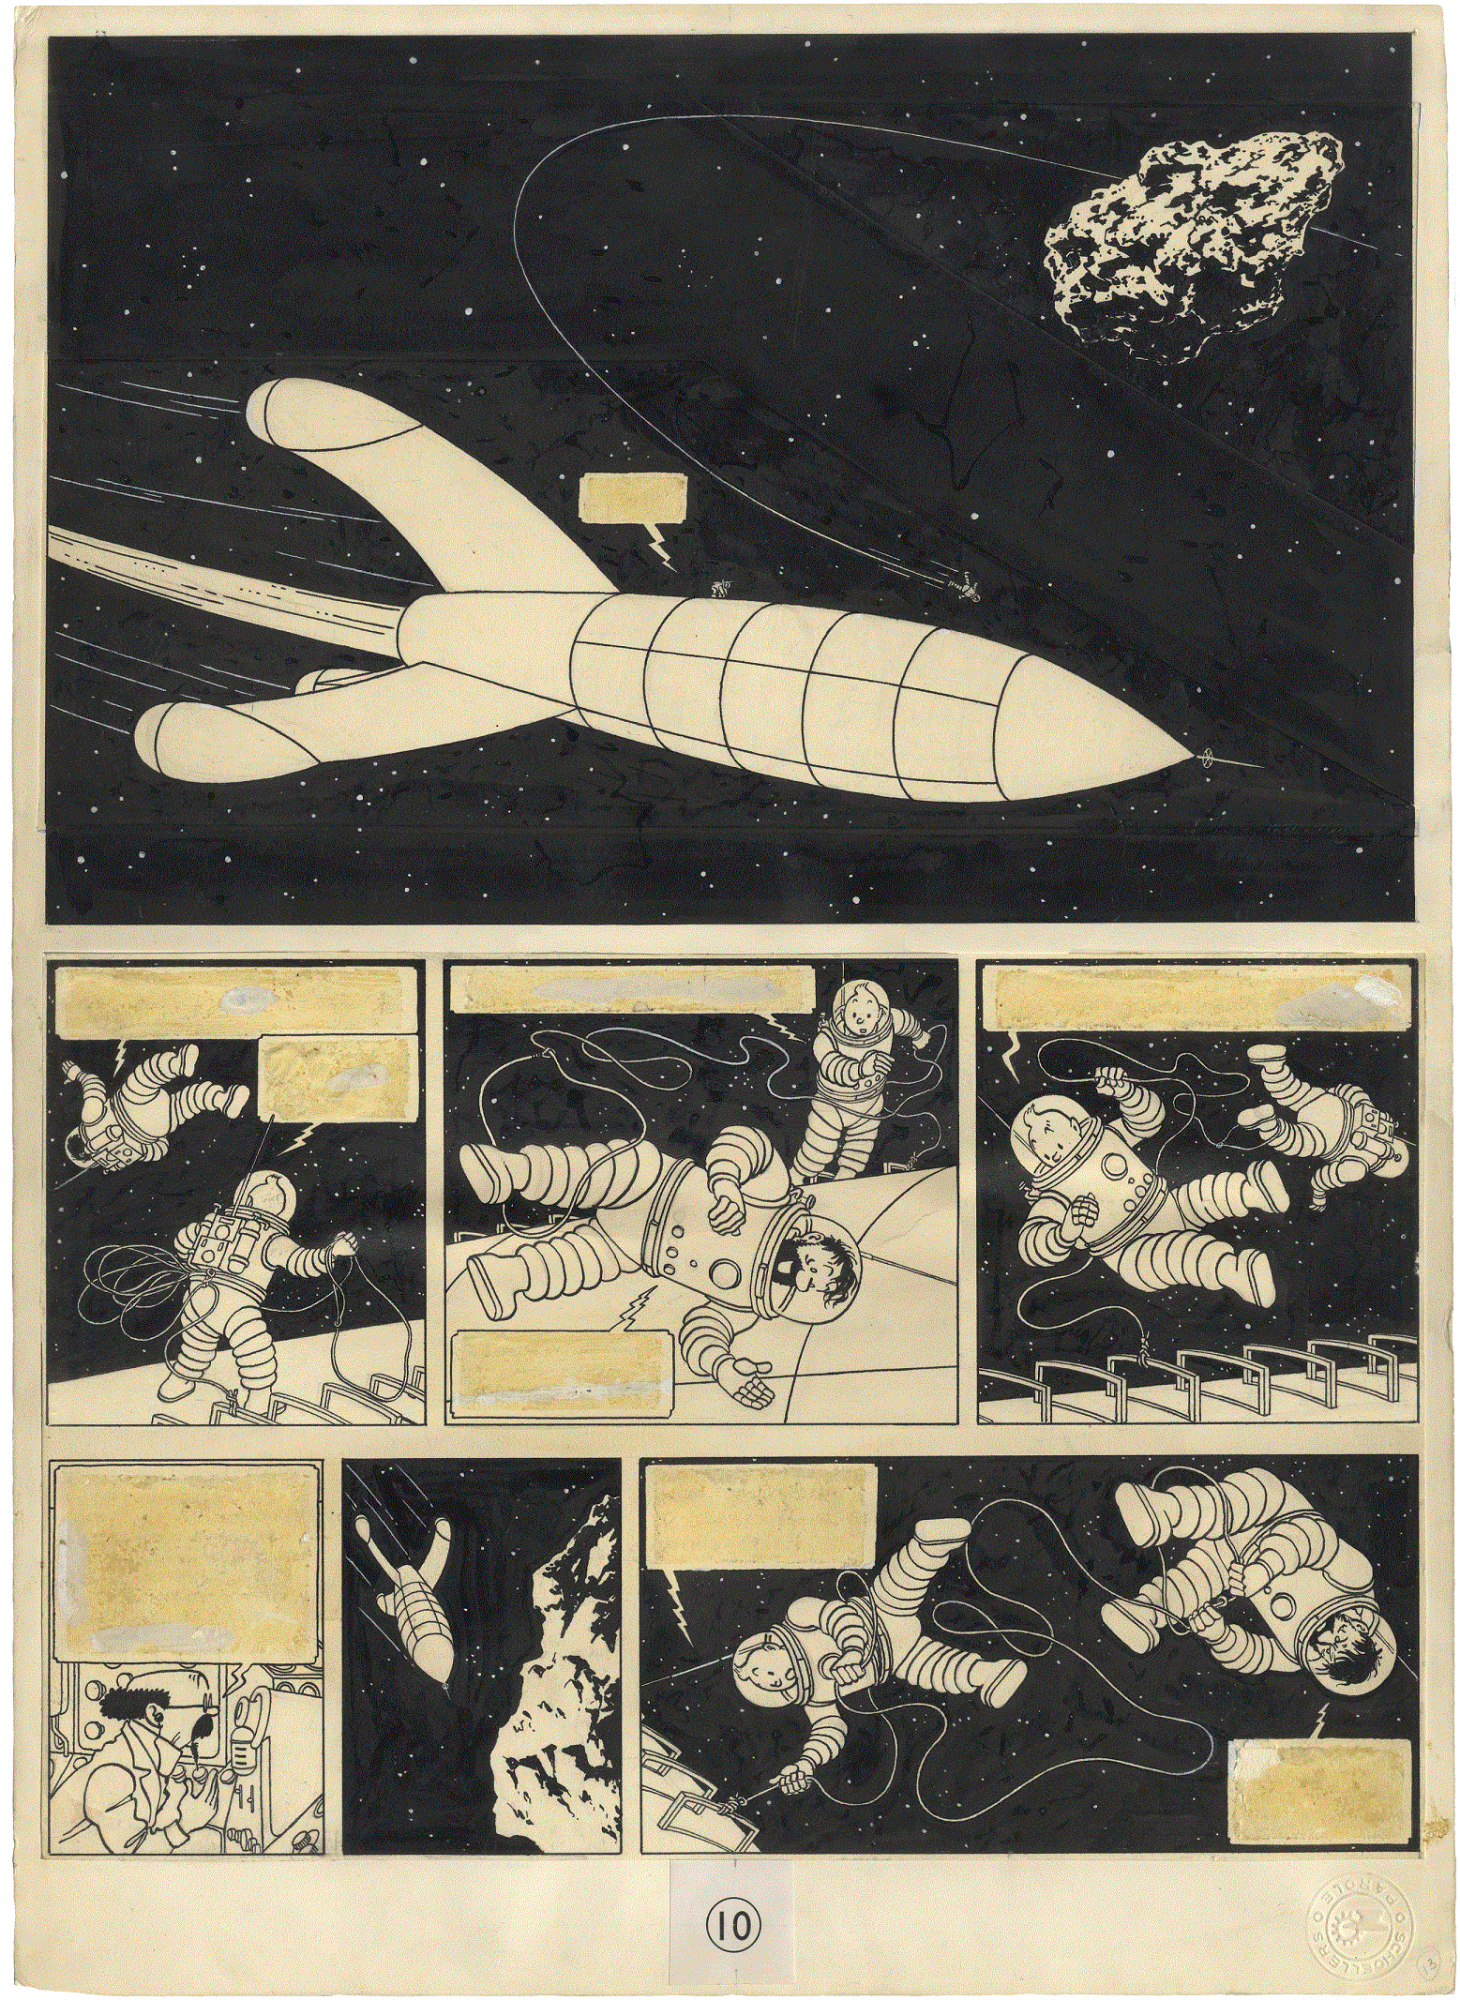 Exposición Cómic. Hergé (Georges Rémi), Tintín, vol. 17 Caminamos en la luna, página 6, 1954 (tinta china sobre papel) Moulinsart/Casterman.